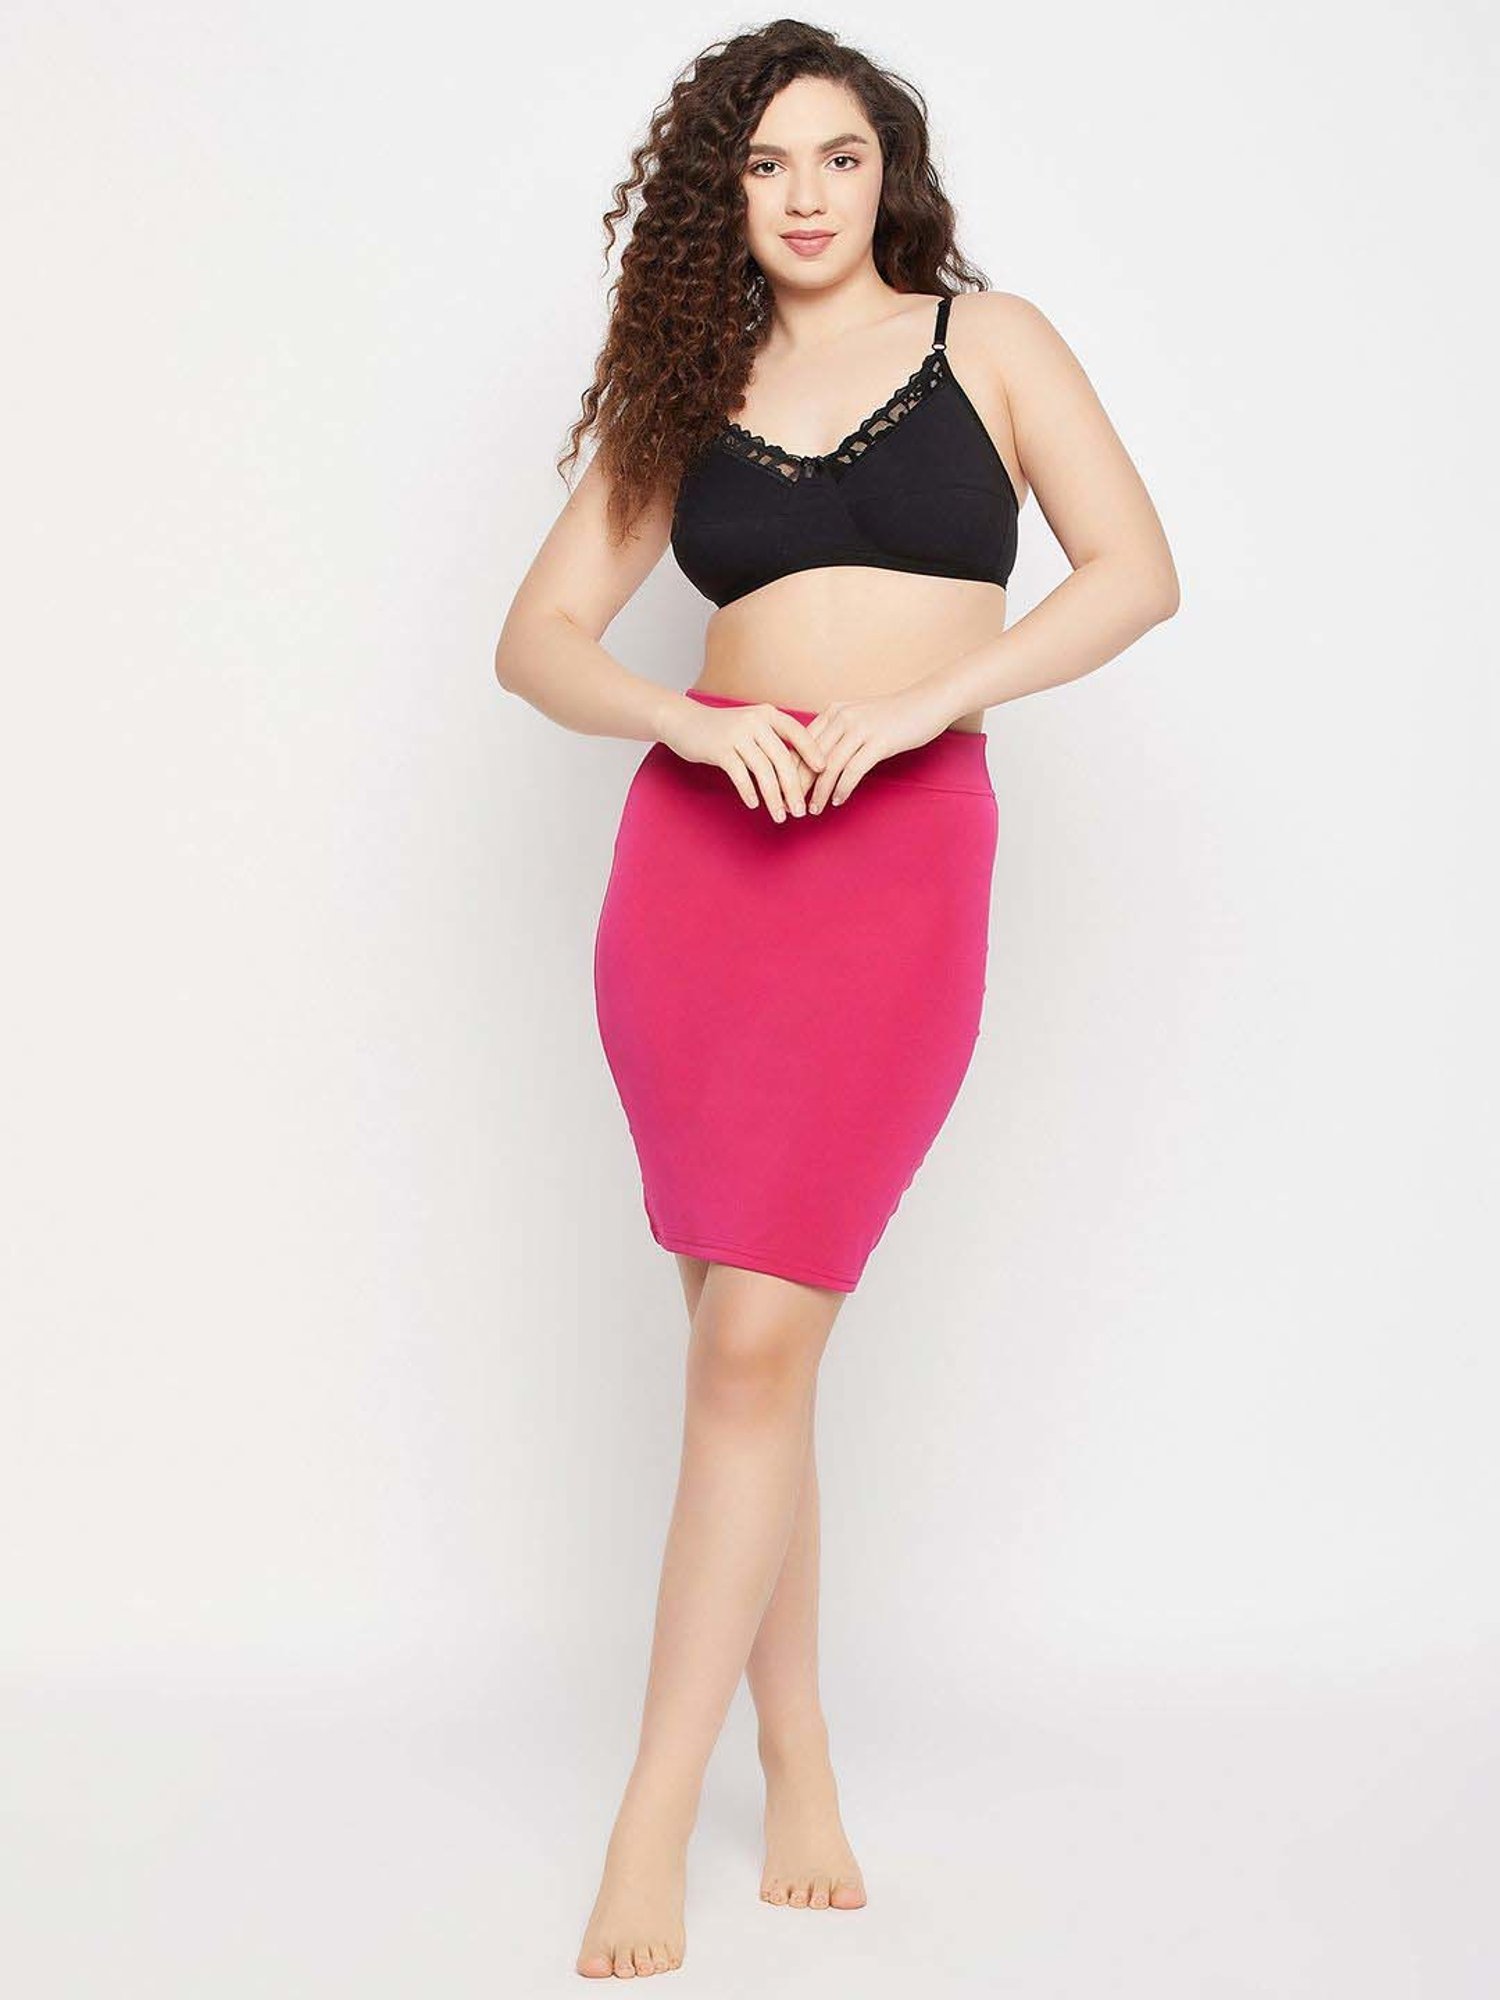 Buy Secrets By ZeroKaata Women Seamless Magenta Skirt Shapewear online